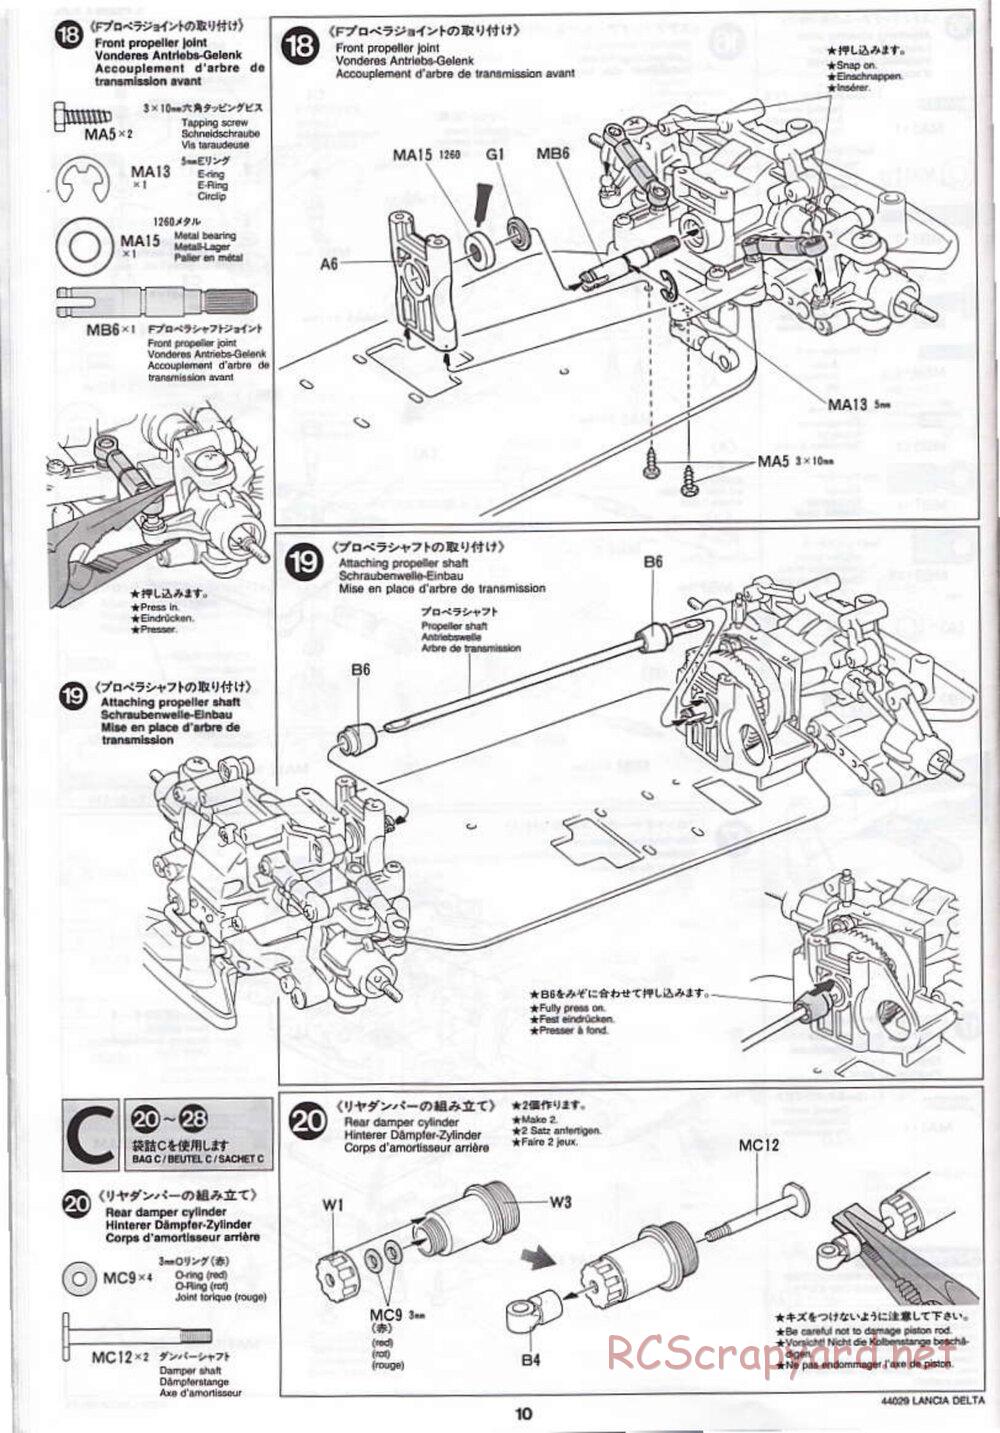 Tamiya - Lancia Delta HF Integrale - TG10 Mk.1 Chassis - Manual - Page 10